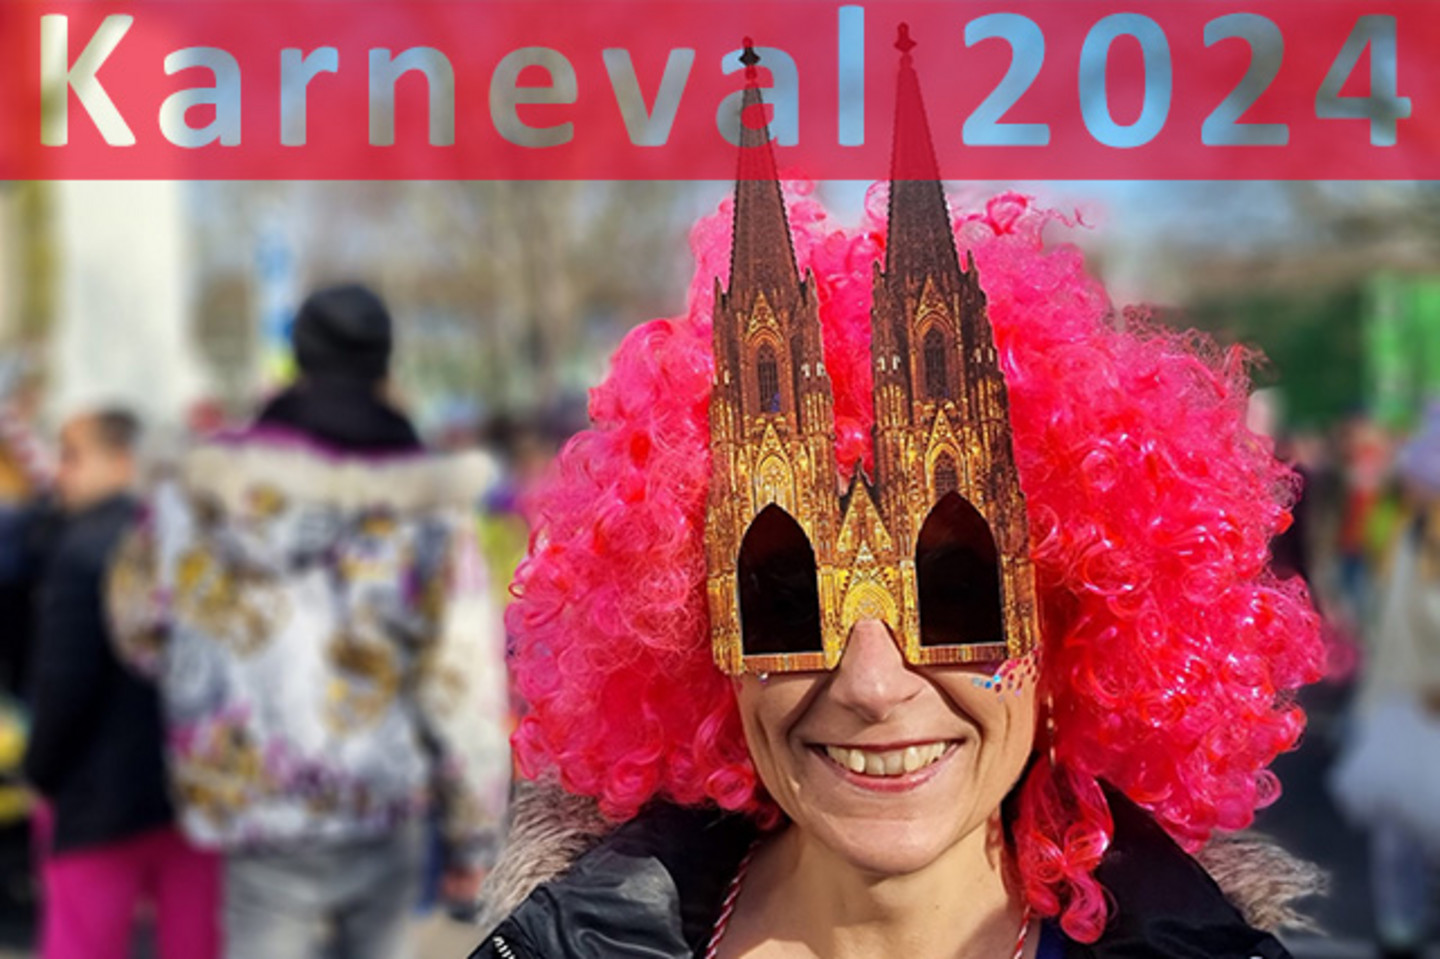 Karnevalistin mit Dom-Brille und der Überschrift Karneval 2024